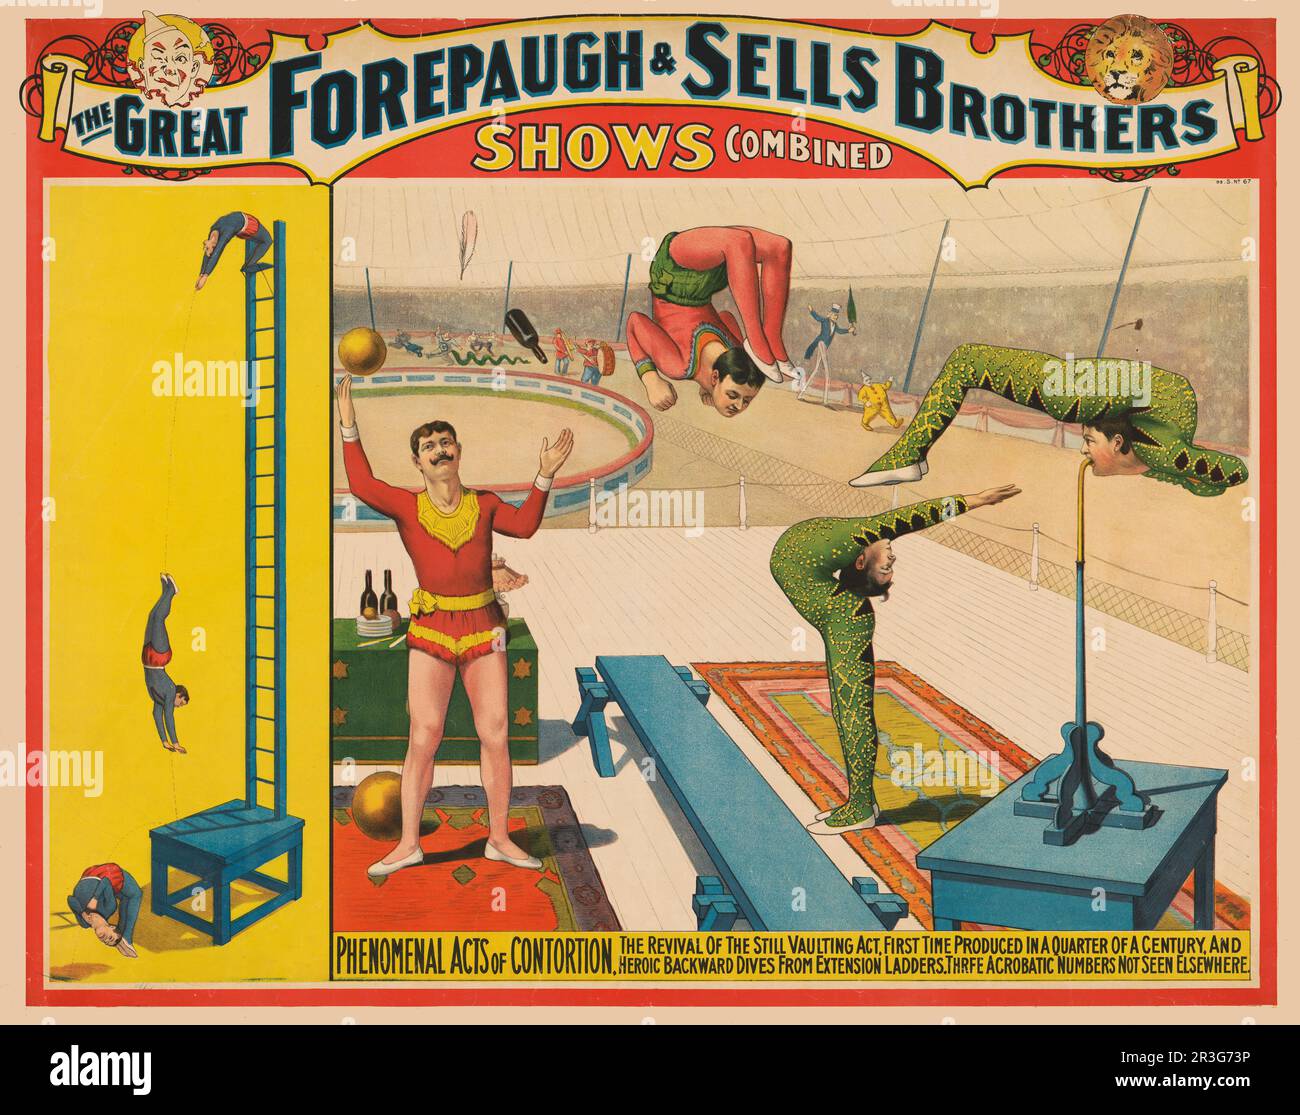 Das alte Adam Forepaugh und Sells Brothers Circus Poster zeigt einen Jongleur und Schlangenmenschen, die um 1899 Schauspieler spielen. Stockfoto